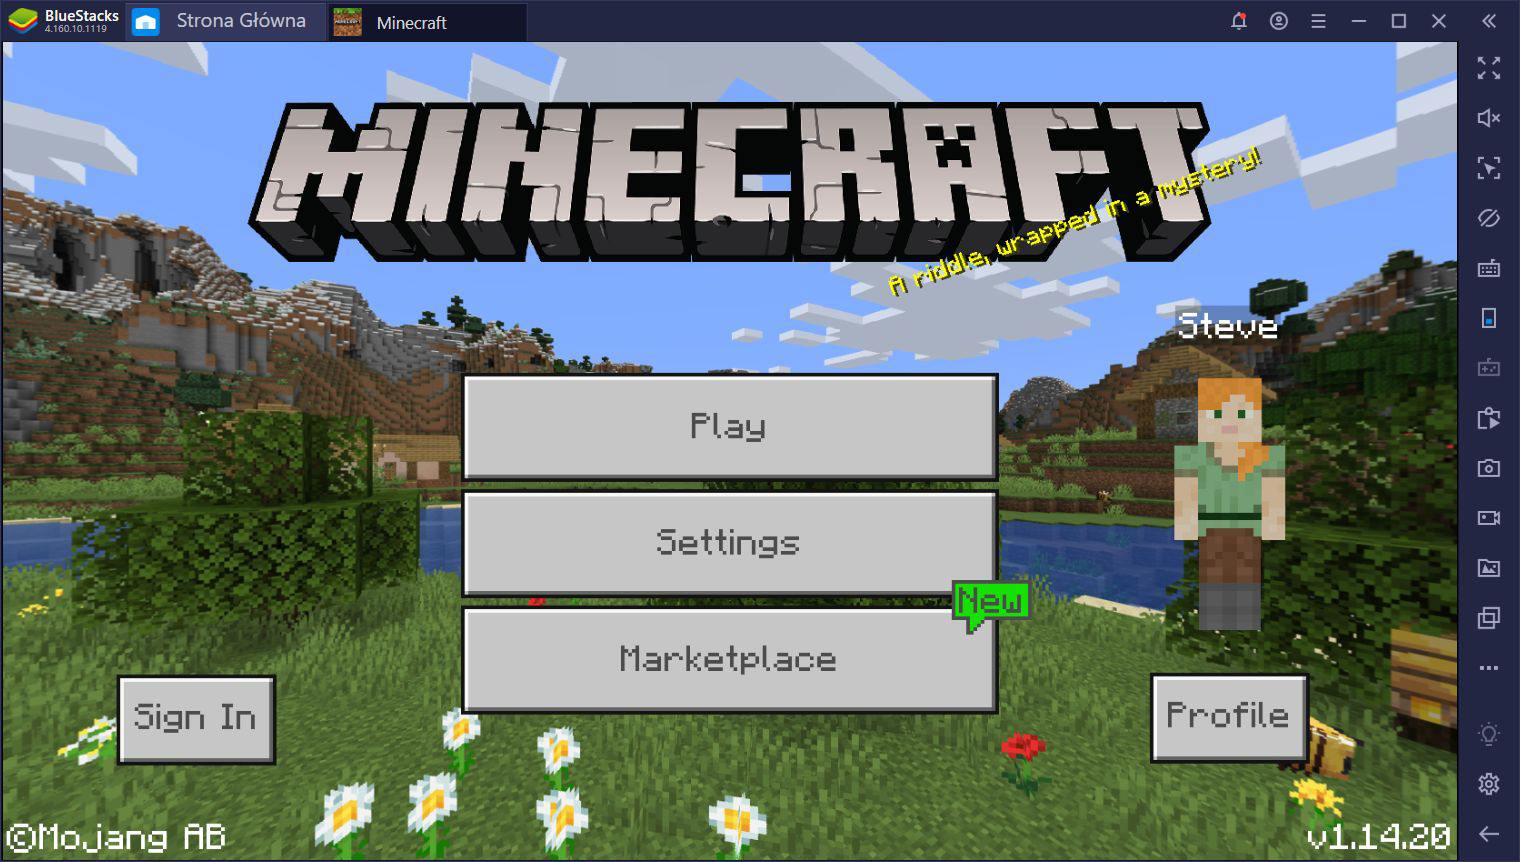 Minecraft jest już dostępny w BlueStacks